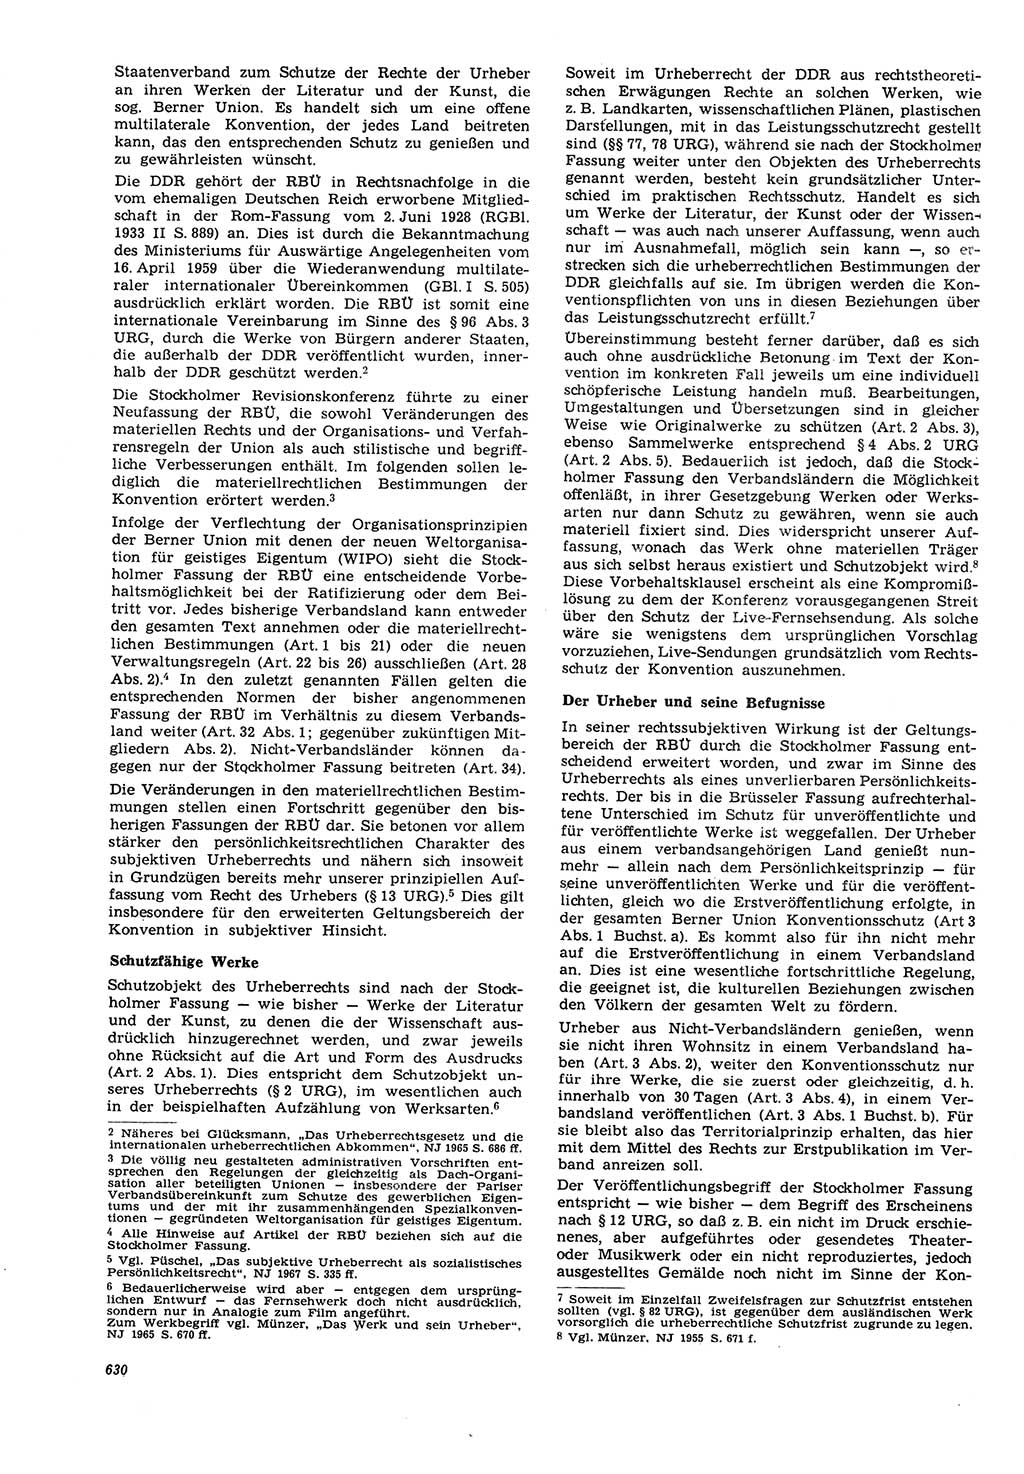 Neue Justiz (NJ), Zeitschrift für Recht und Rechtswissenschaft [Deutsche Demokratische Republik (DDR)], 21. Jahrgang 1967, Seite 630 (NJ DDR 1967, S. 630)